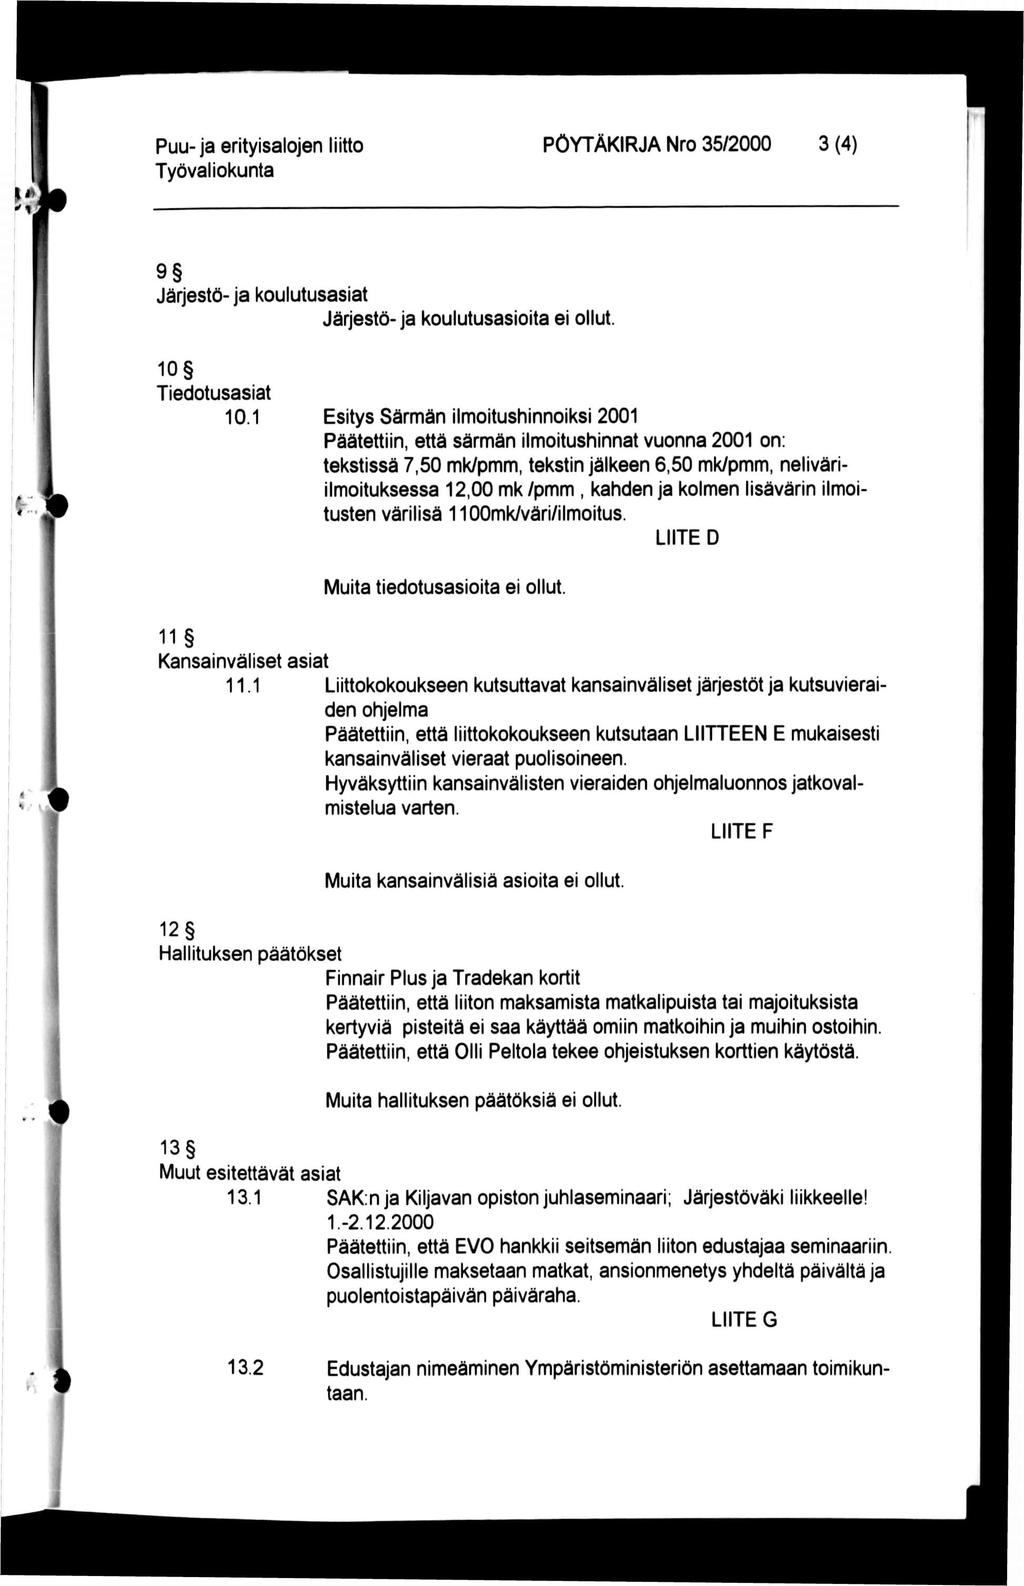 Puu-ja erityisalojen liitto PÖYTÄKIRJA Nro 35/2000 3 (4) 9 Järjestö- ja koulutusasiat Järjestö- ja koulutusasioita ei ollut. f. 4 '» 10 Tiedotusasiat 10.